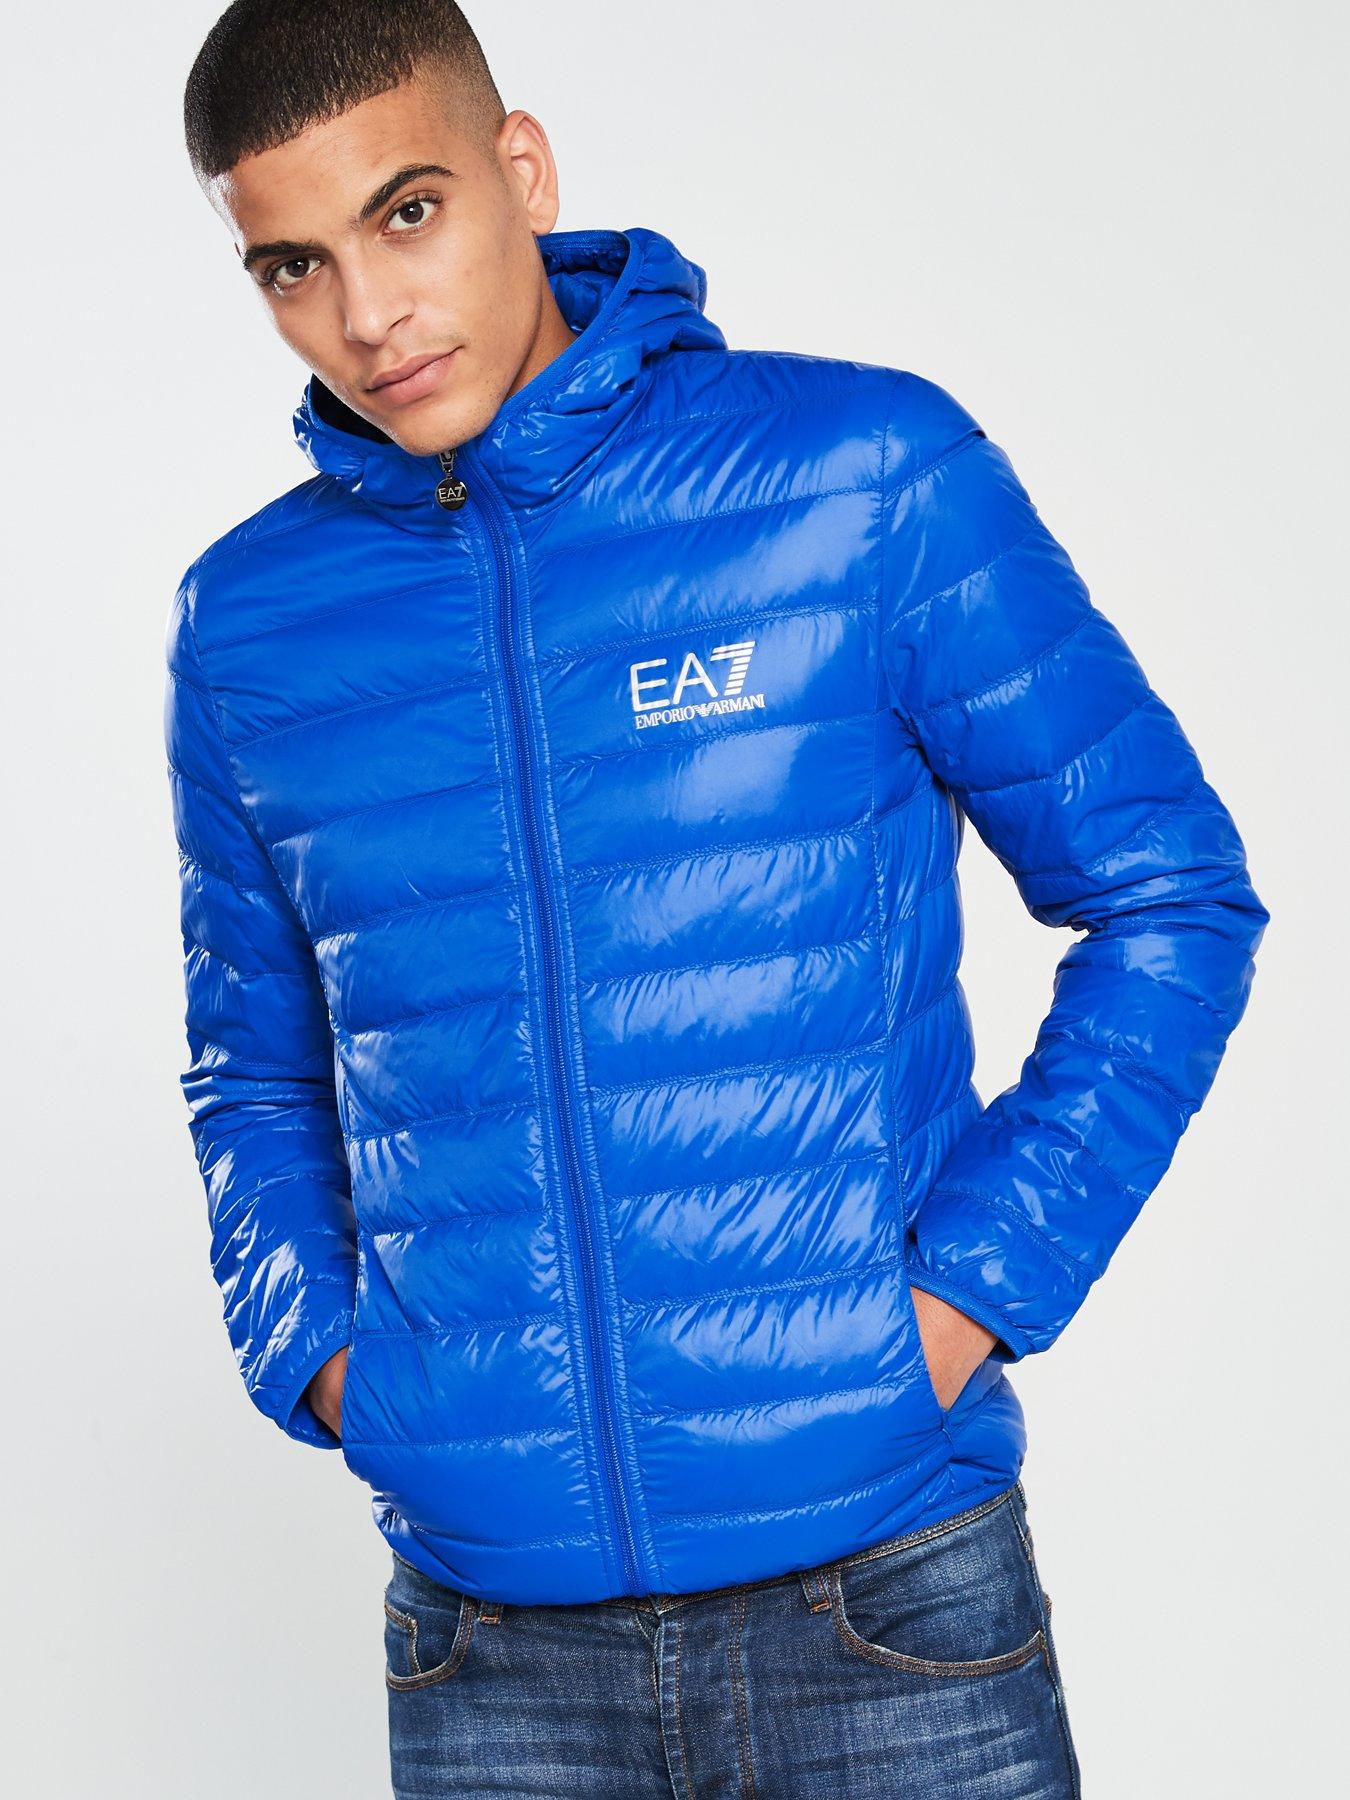 ea7 jackets